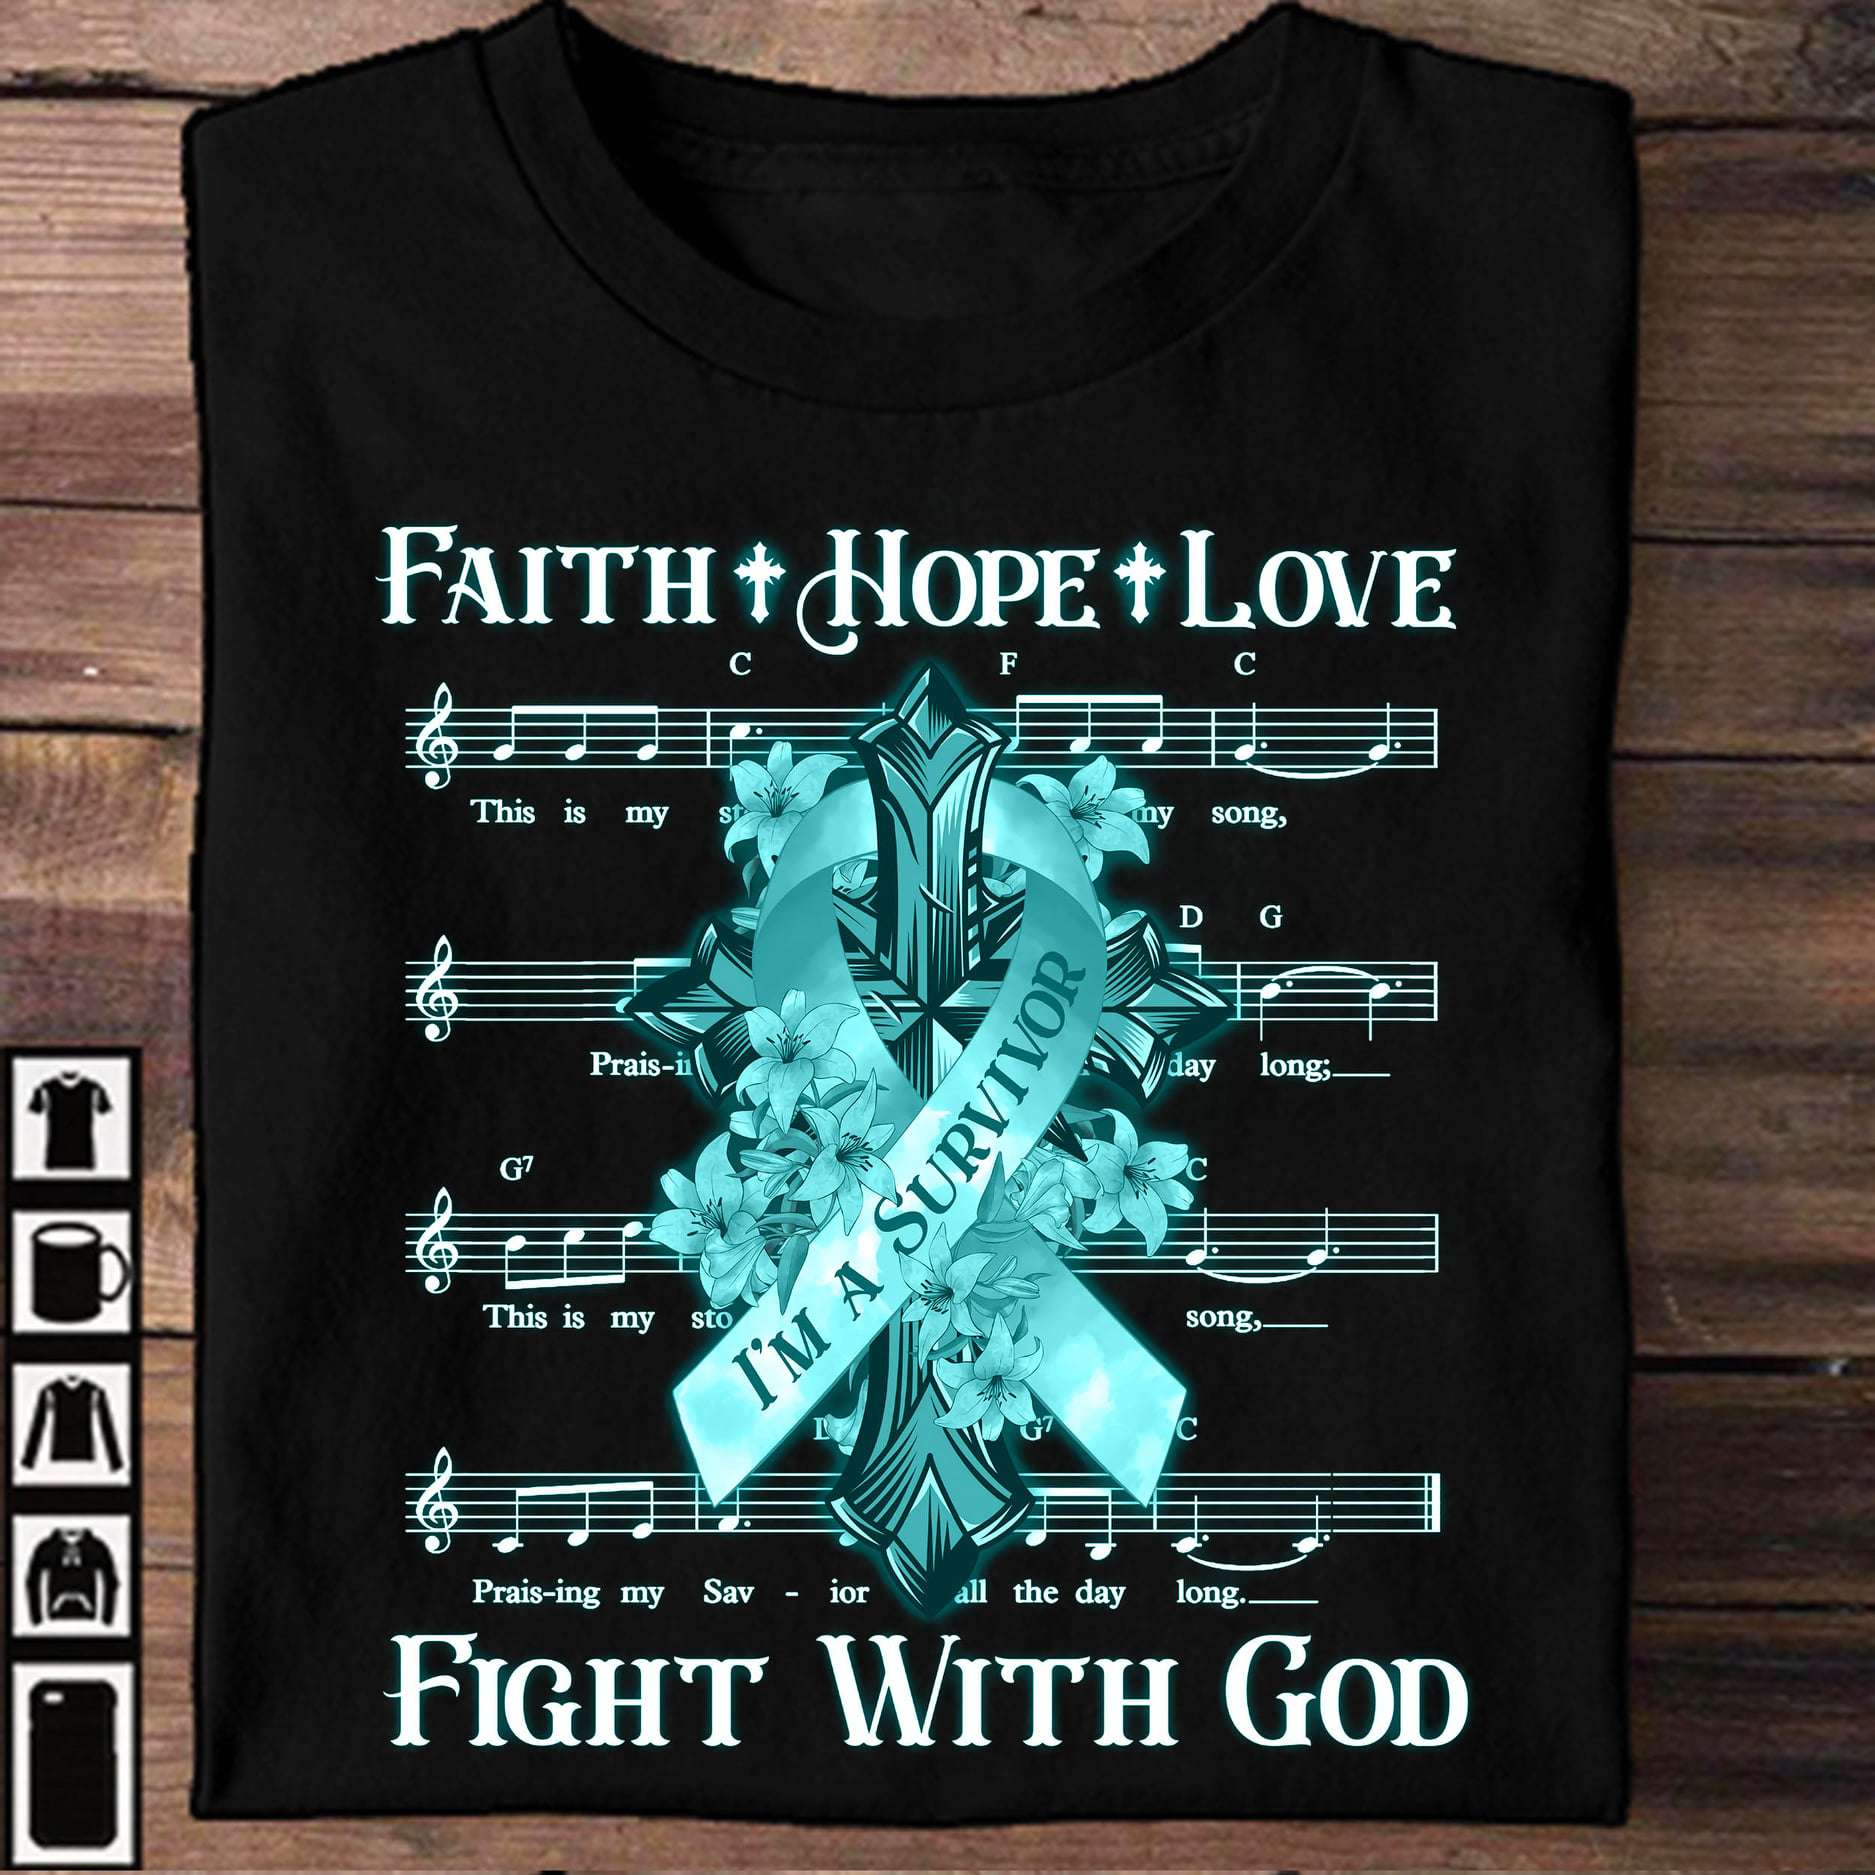 Faith hope love - Fight with god, Cancer survivor ribbon